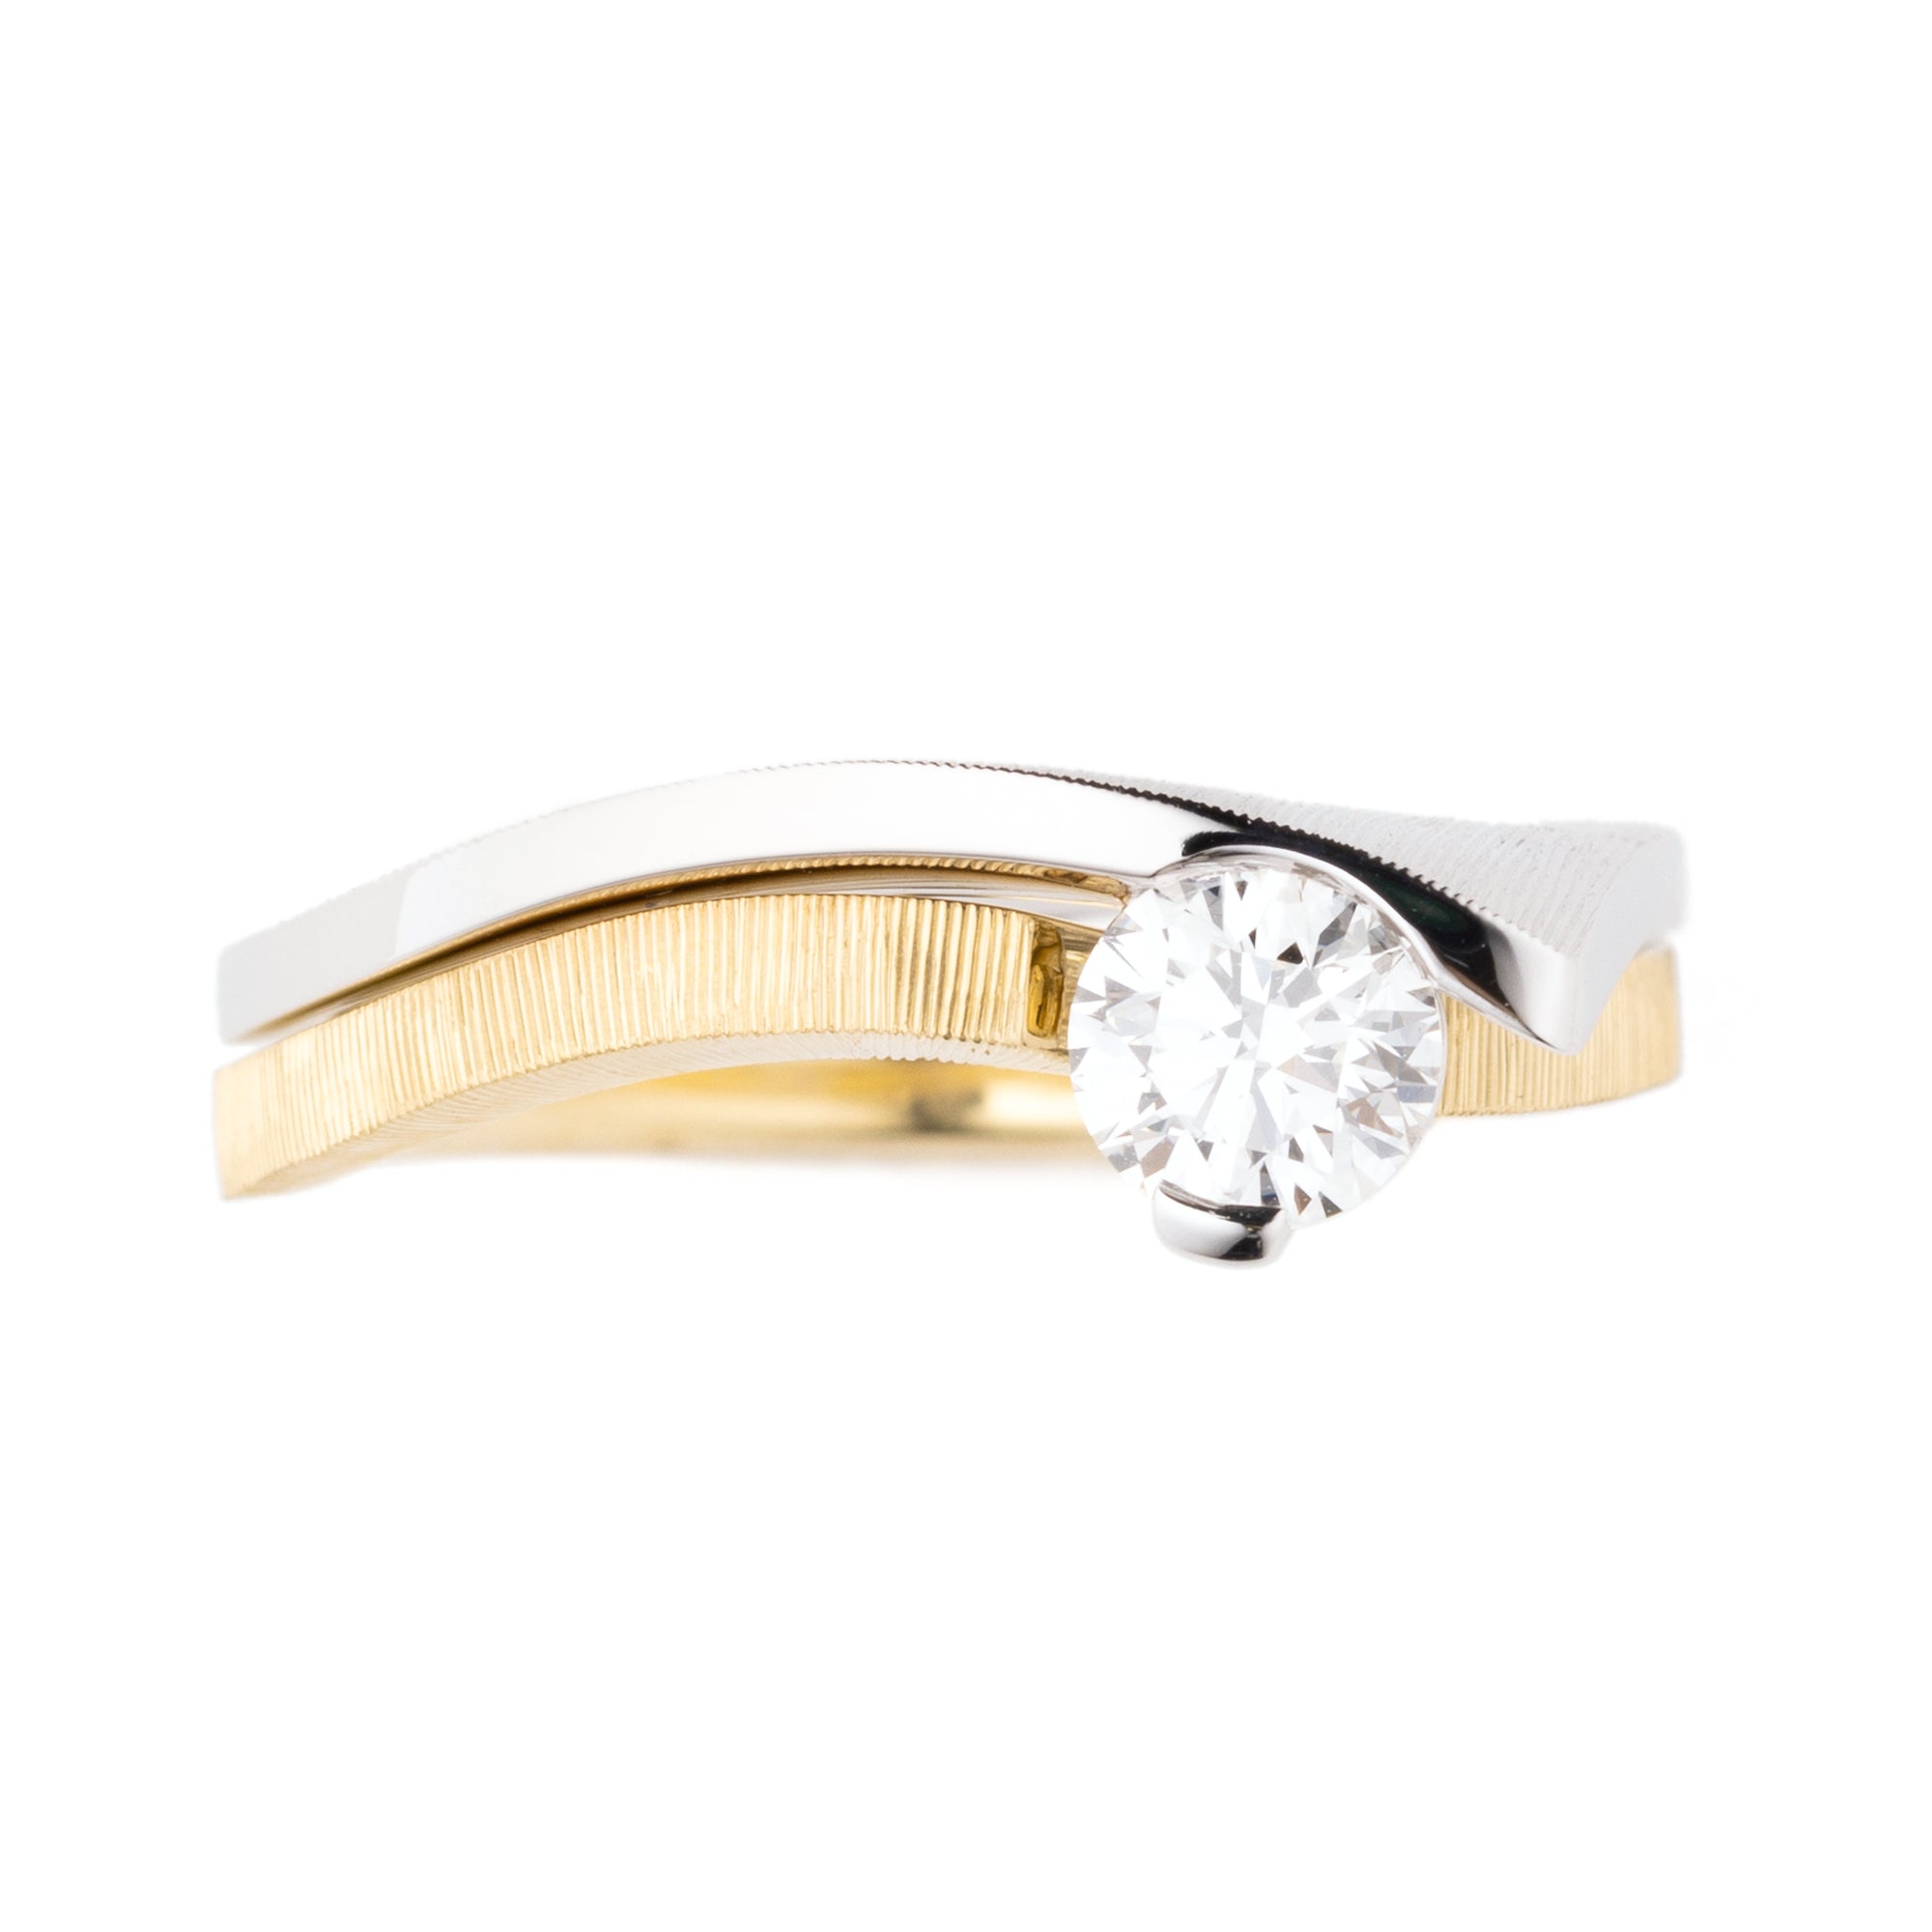 Pt950 ダイヤリング Sorow(そろう)。曲線を描いたモダンデザインのダイヤモンド入りコンビリング。マリッジリング・結婚指輪、普段使いにも。